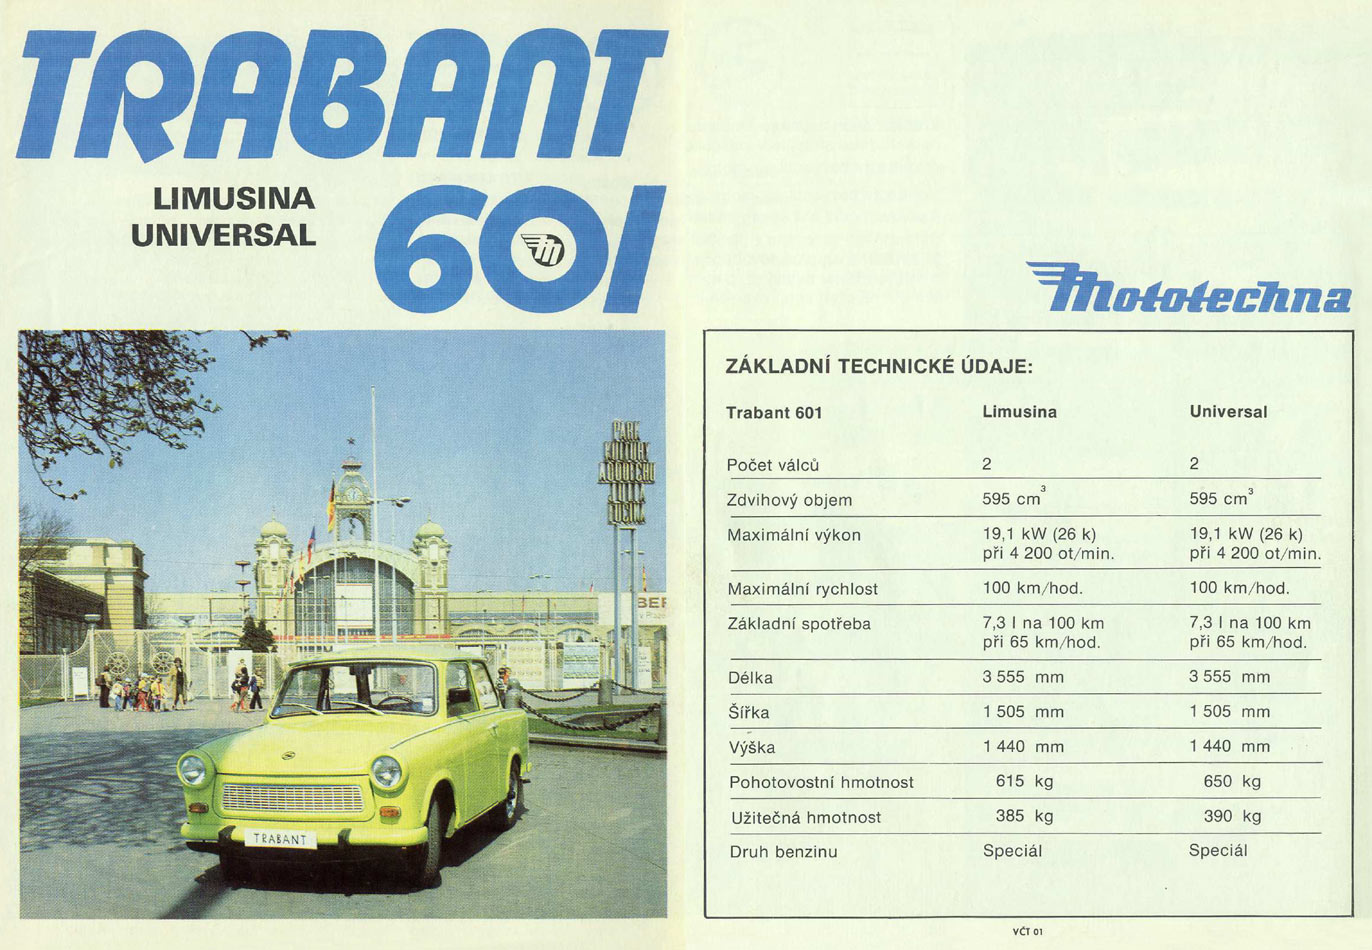 1979 - Trabant P 601 - Seite 1 und 4